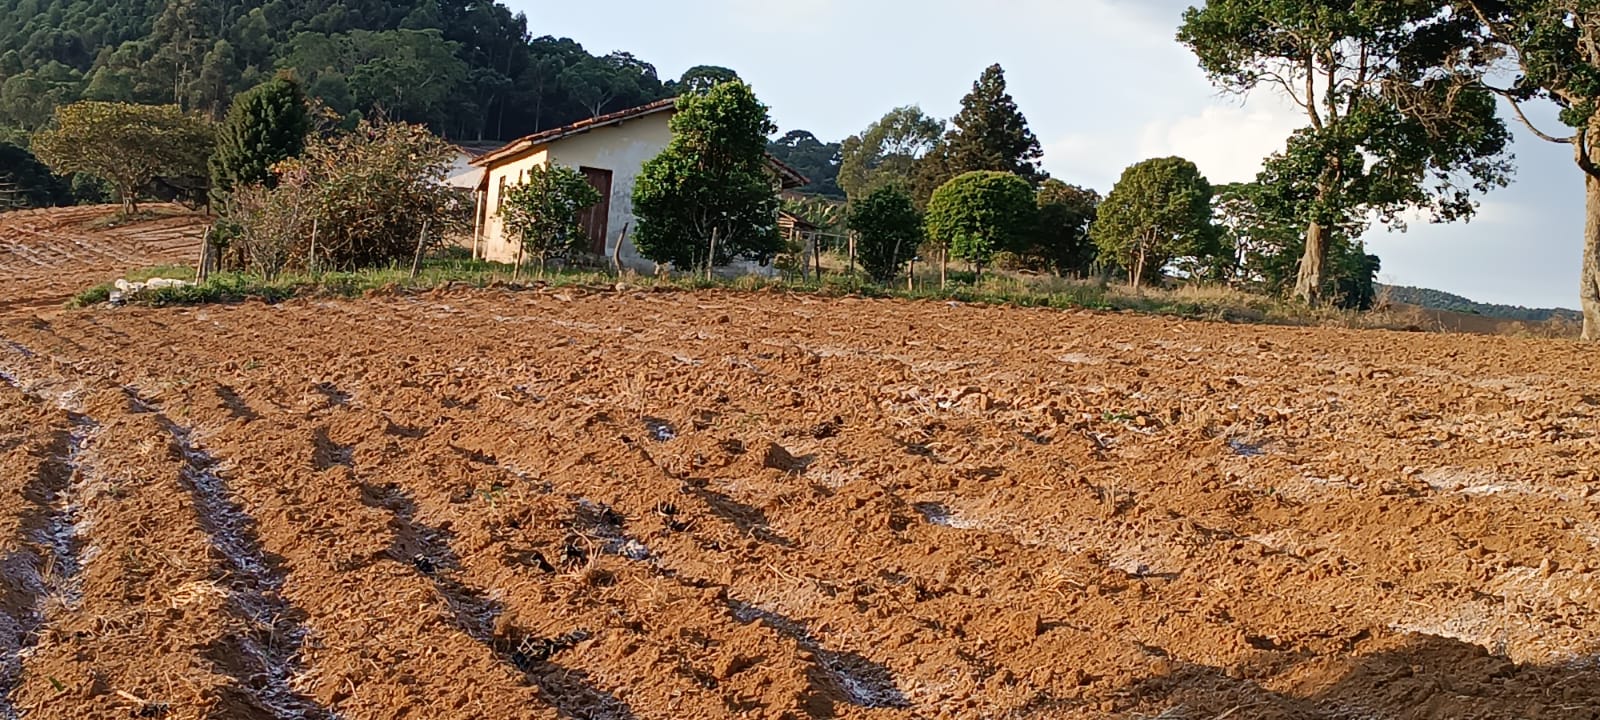 Fazenda com casas, excelente para plantio ou pecuária, varias nascentes | Camanducaia - MG  | código 1037